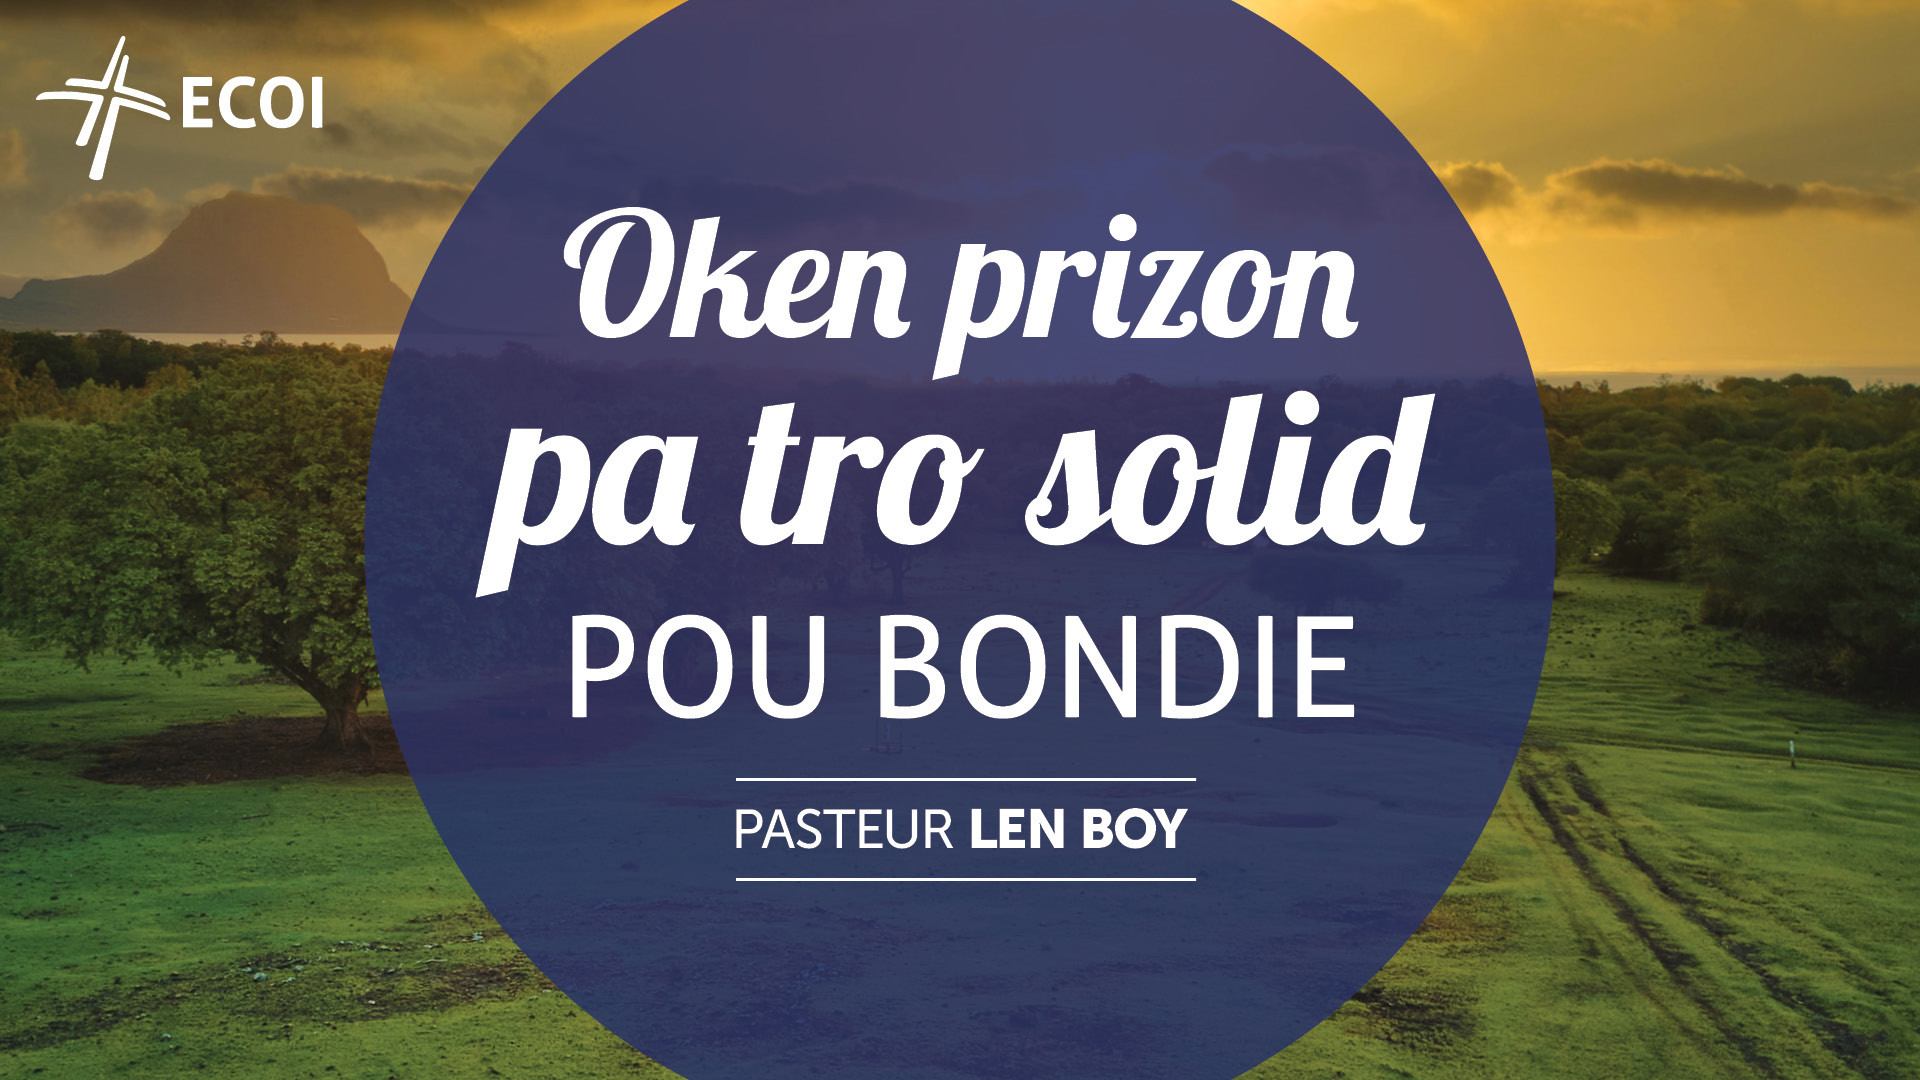 Featured image for “Oken prizon pa tro solid pou Bondie”